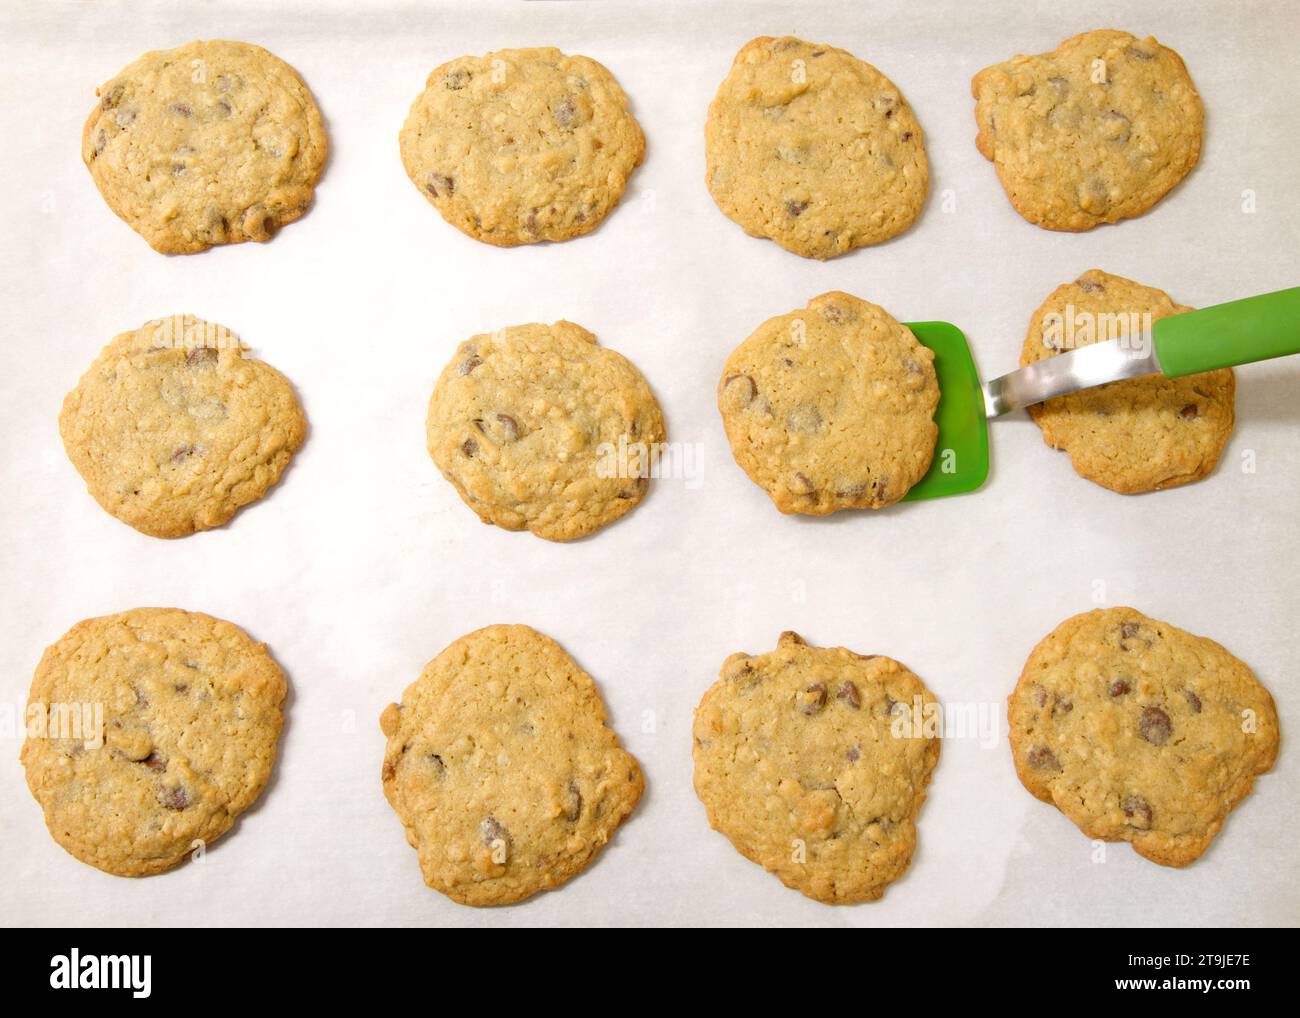 Reihen frisch gebackener Haferflocken-Schokoladen-Chip-Cookies auf Pergamentpapier, grüner Silikonspachtel, der einen Keks vom Backblech hebt. Stockfoto